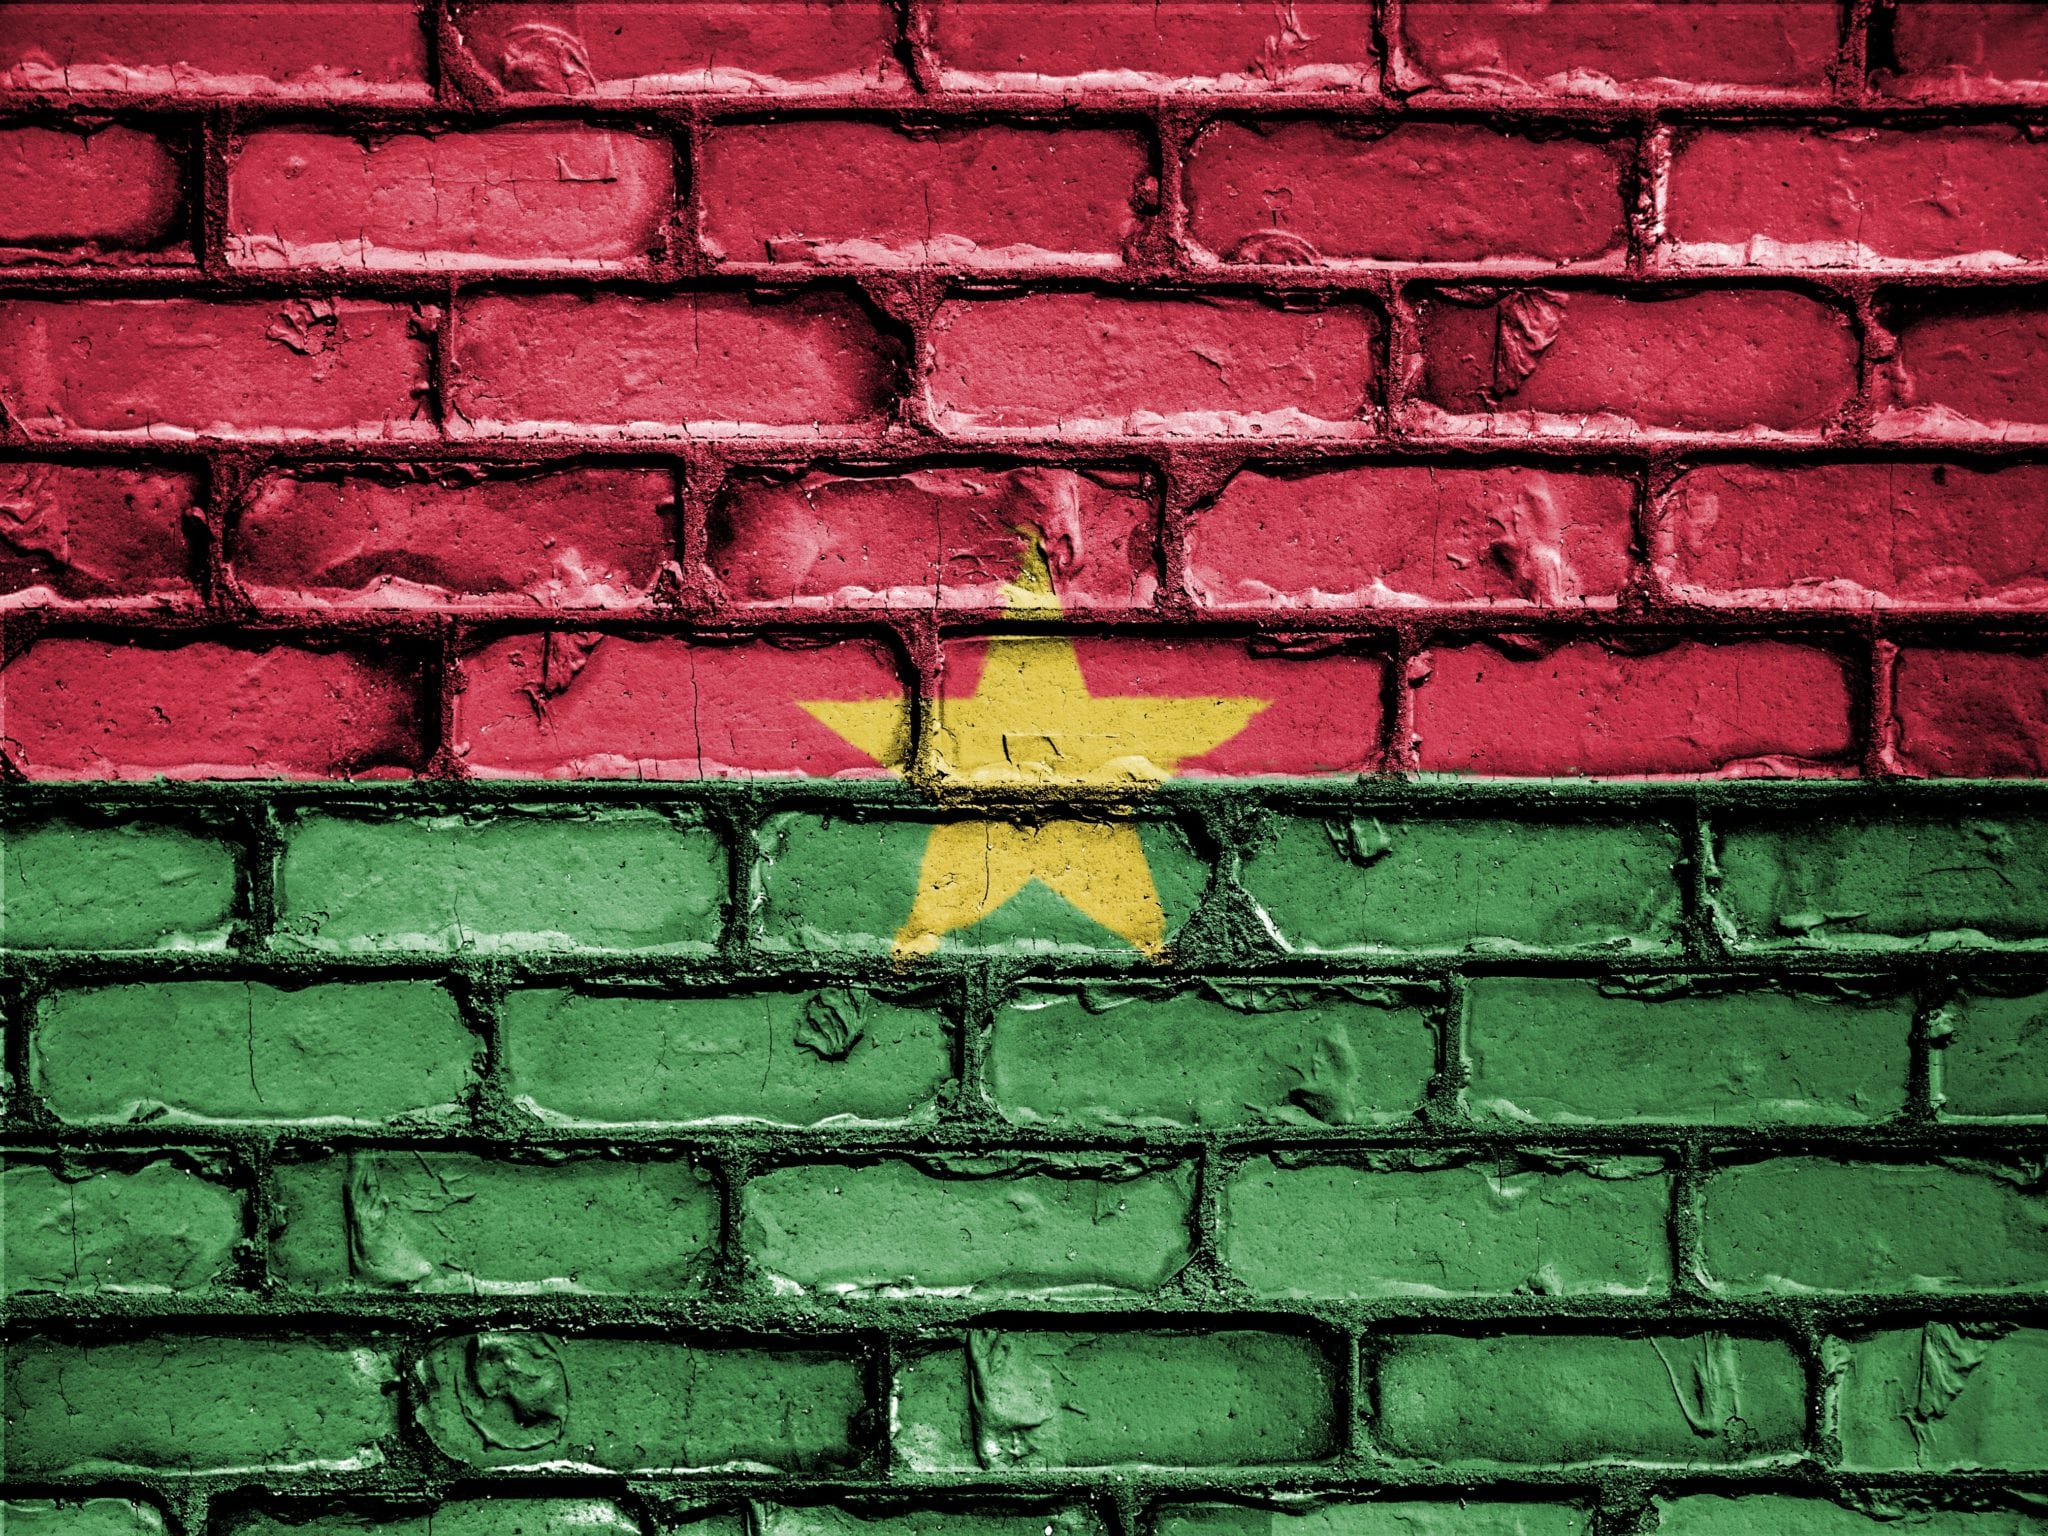 Le verità sul caso Sankara e il futuro del Burkina Faso